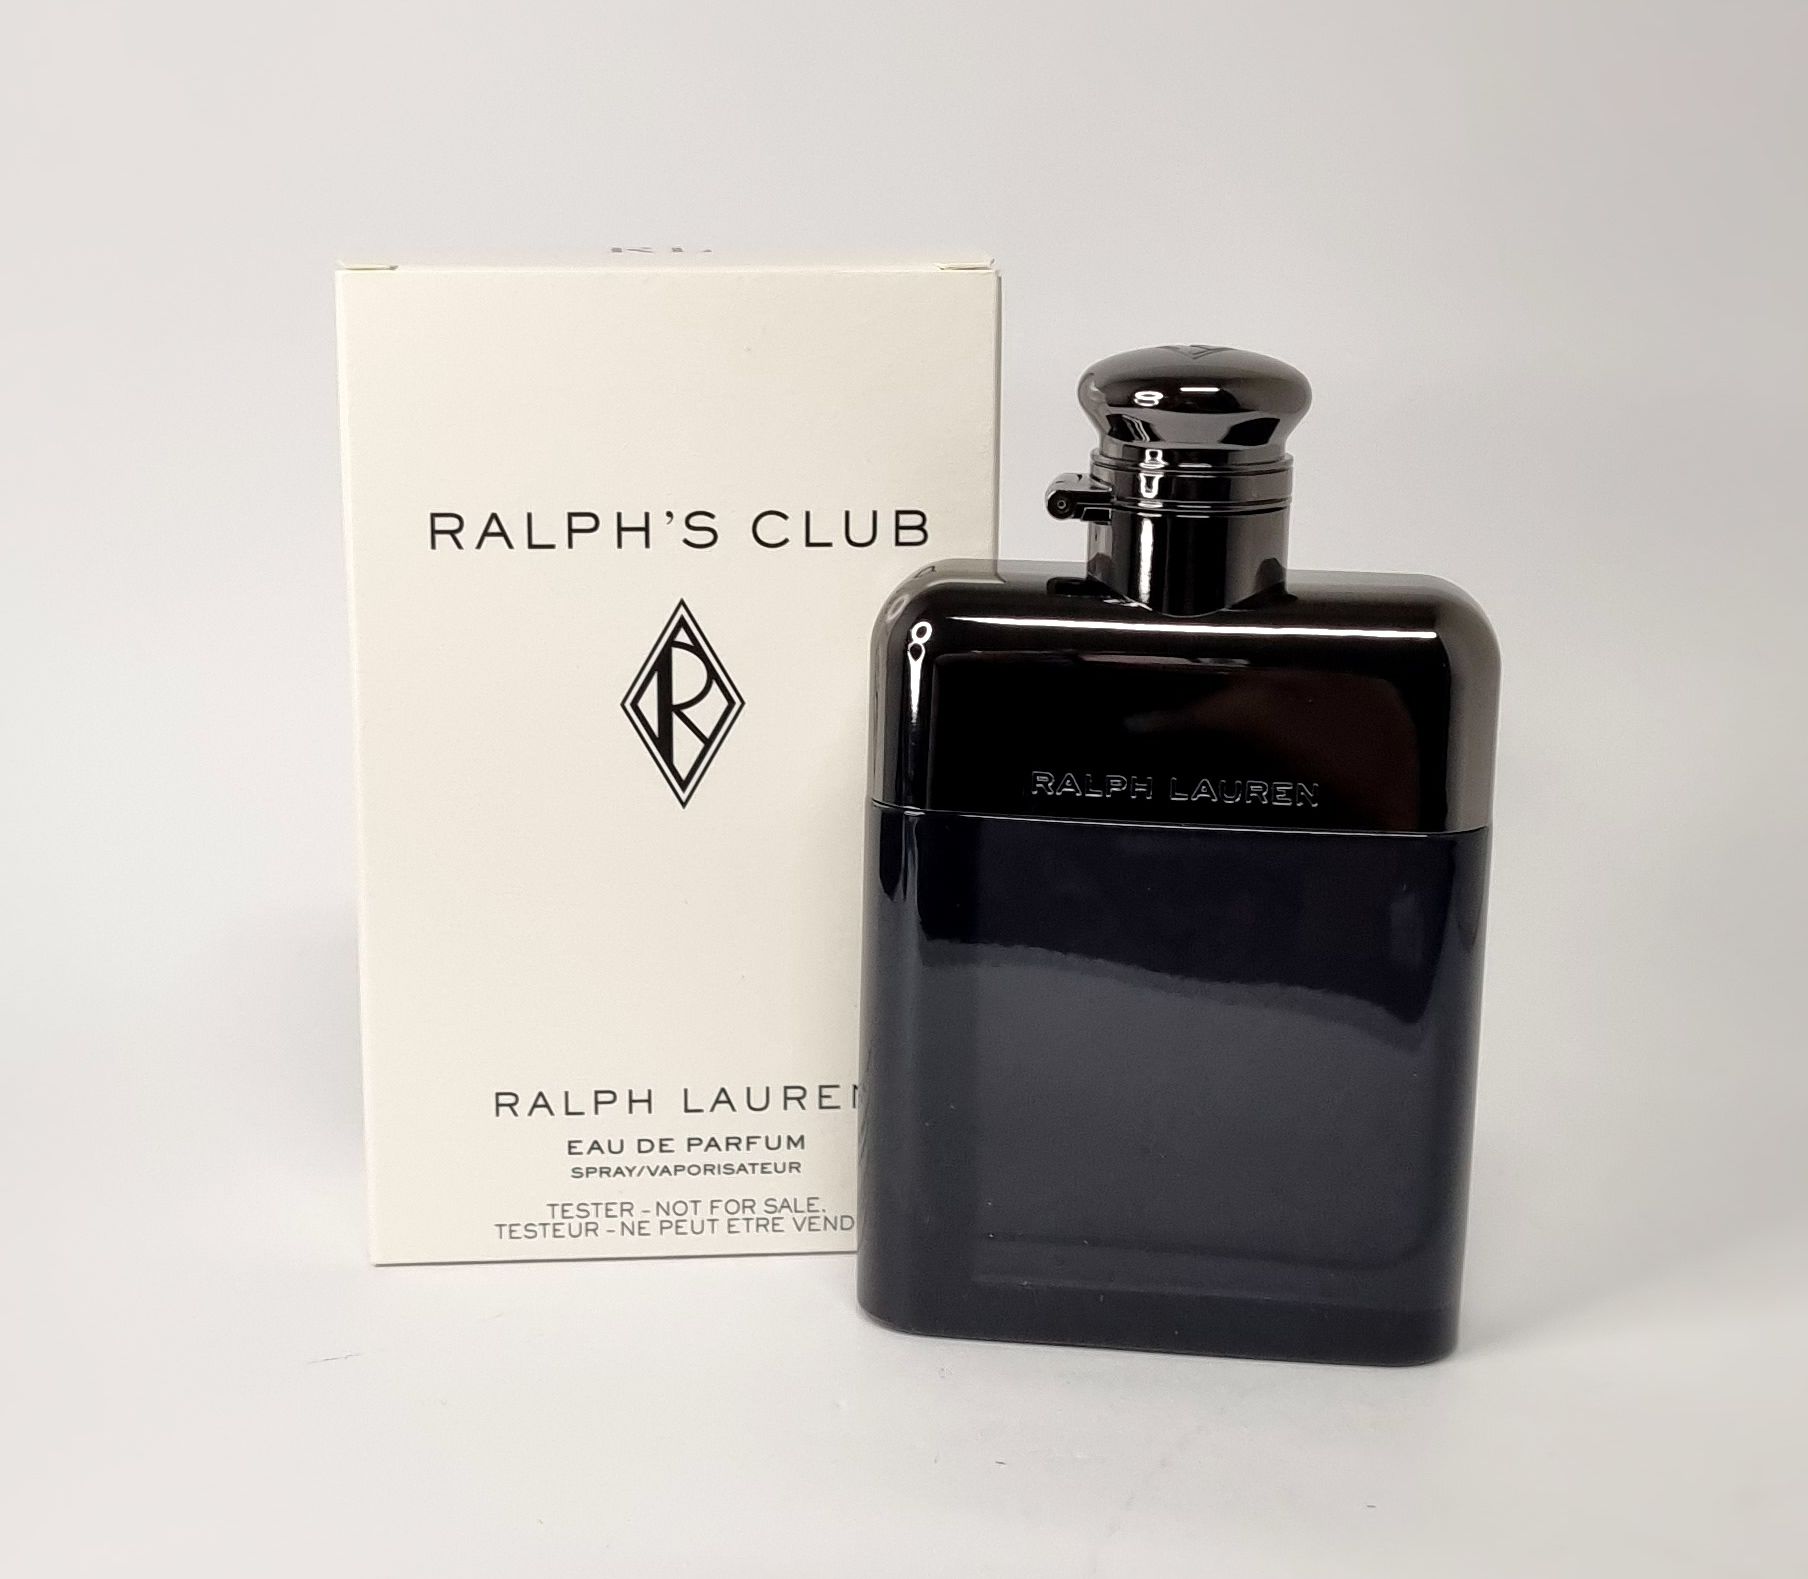 Ralph Lauren Ralph's Club eau de parfum spray 100ml TESTER packaging |  Lazada Singapore